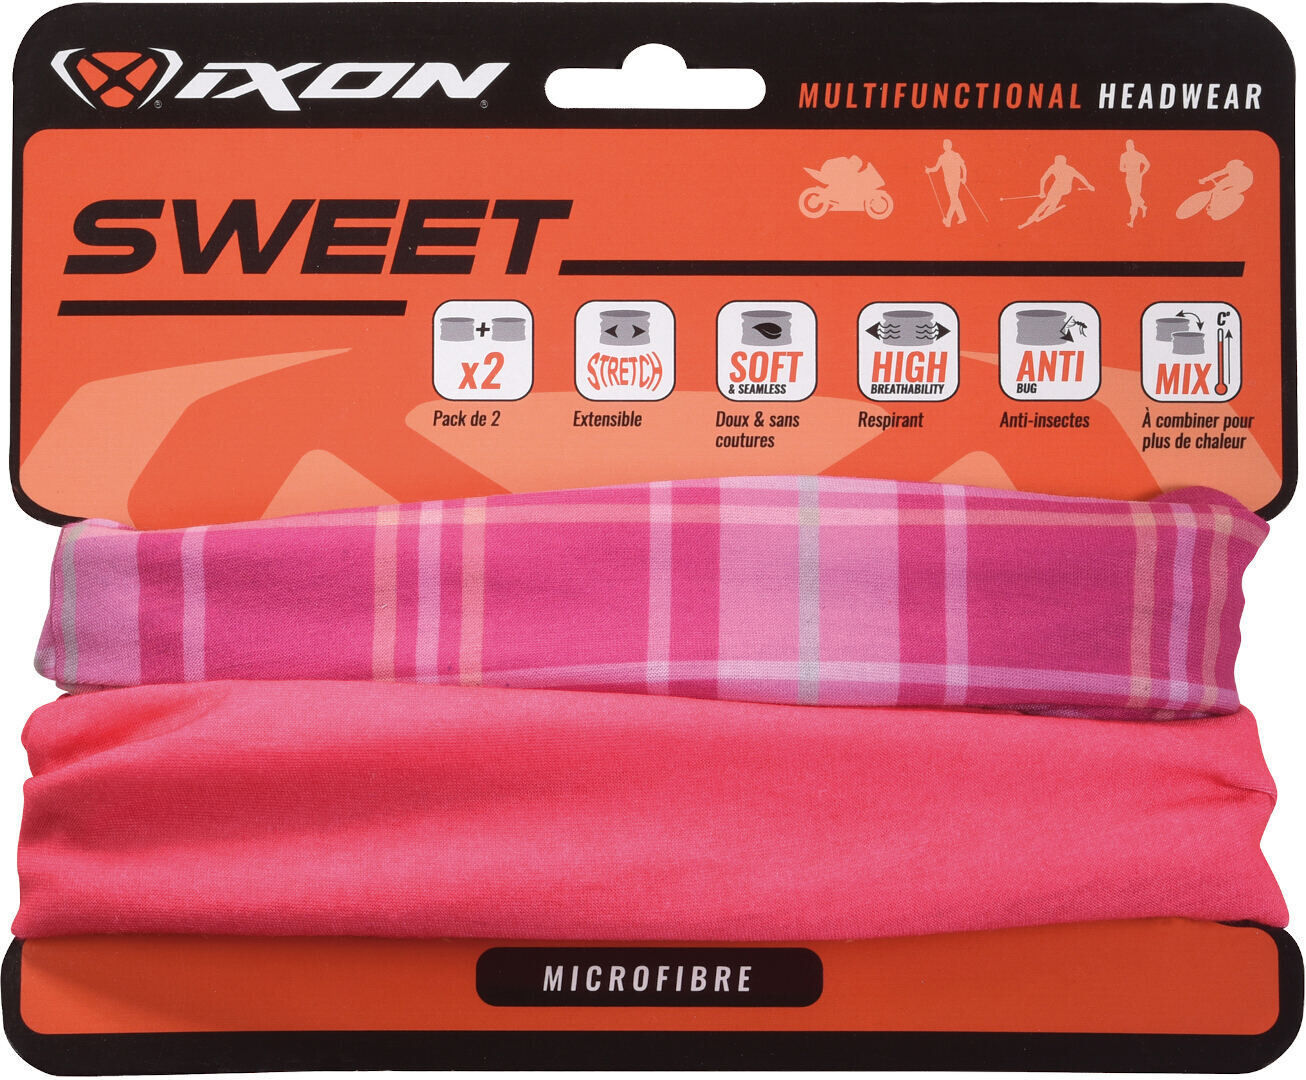 Ixon Sweet Square Headwear multifuncional